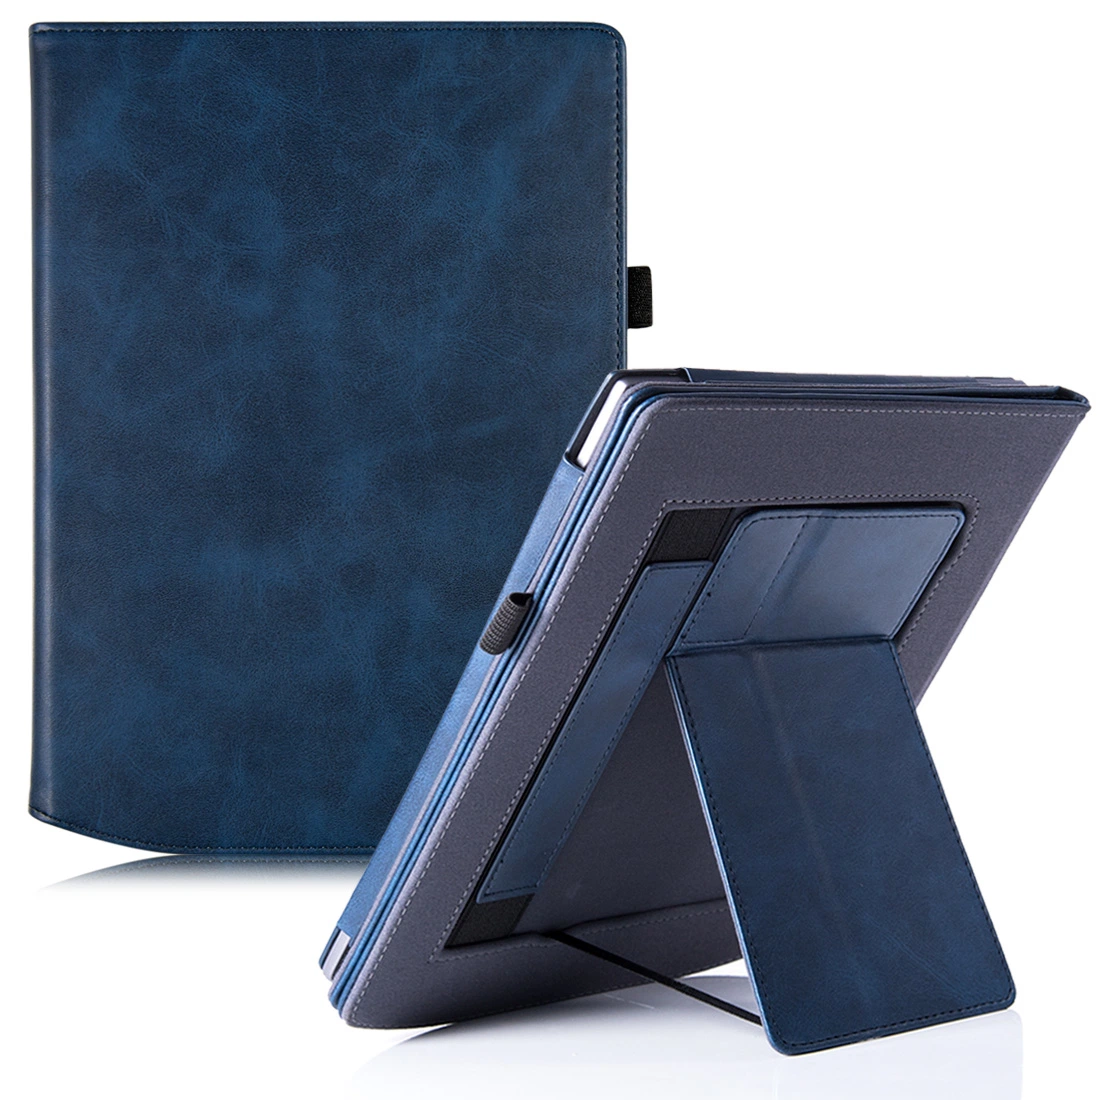 Doppelständer-Etui für Taschenbuch Inkpad X PU Leder Protective Sleeve Cover Auto Sleep